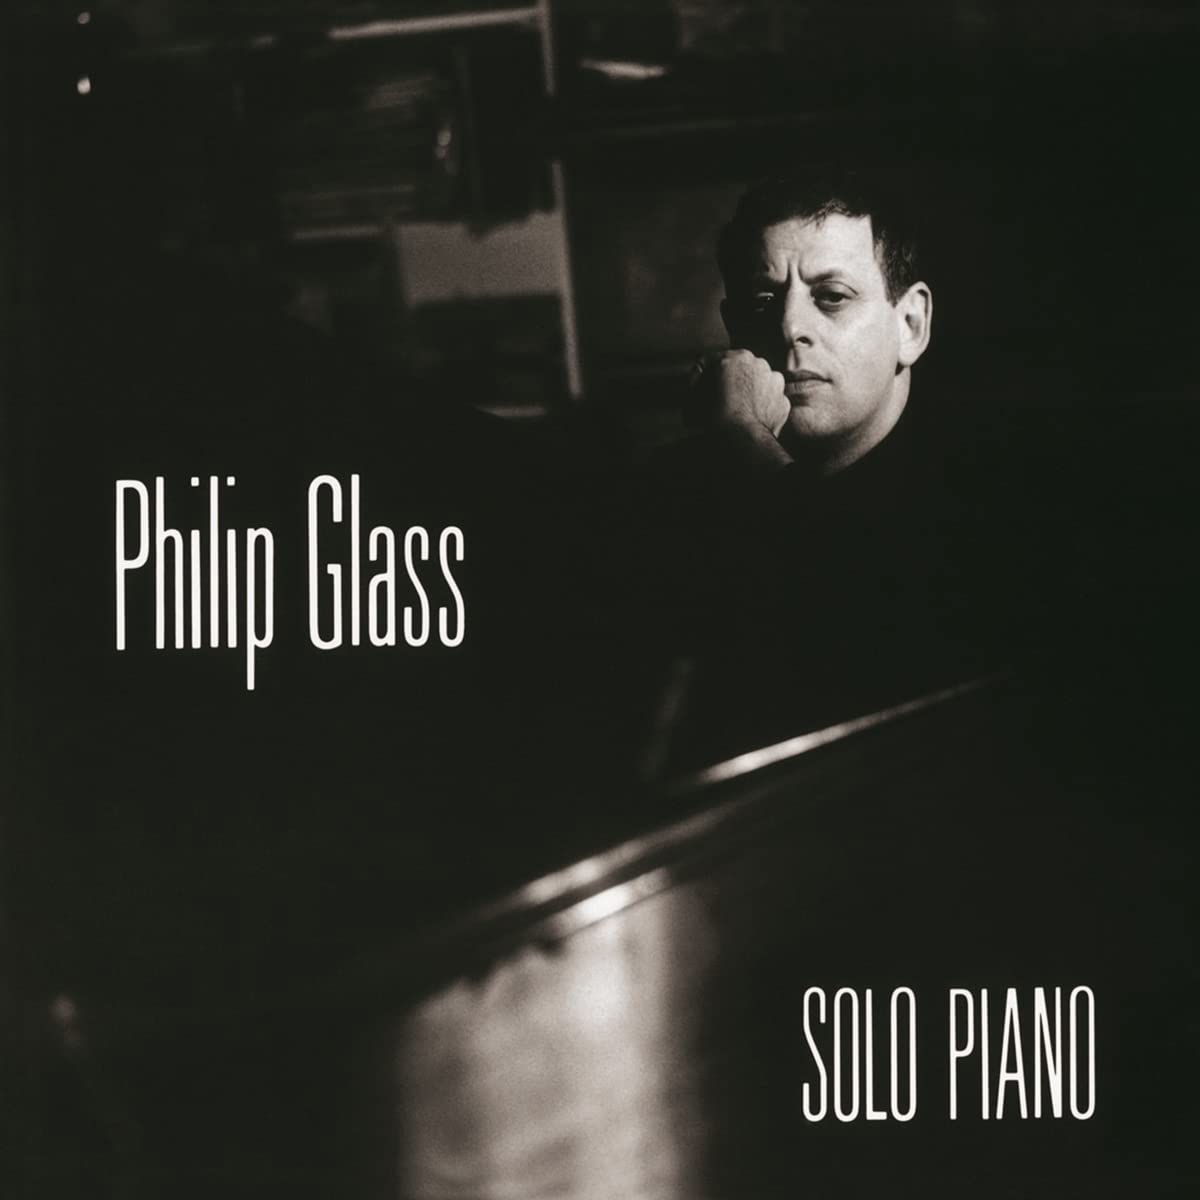 Vinile Philip Glass - Solo Piano -Coloured/Hq- NUOVO SIGILLATO, EDIZIONE DEL 03/01/2023 SUBITO DISPONIBILE